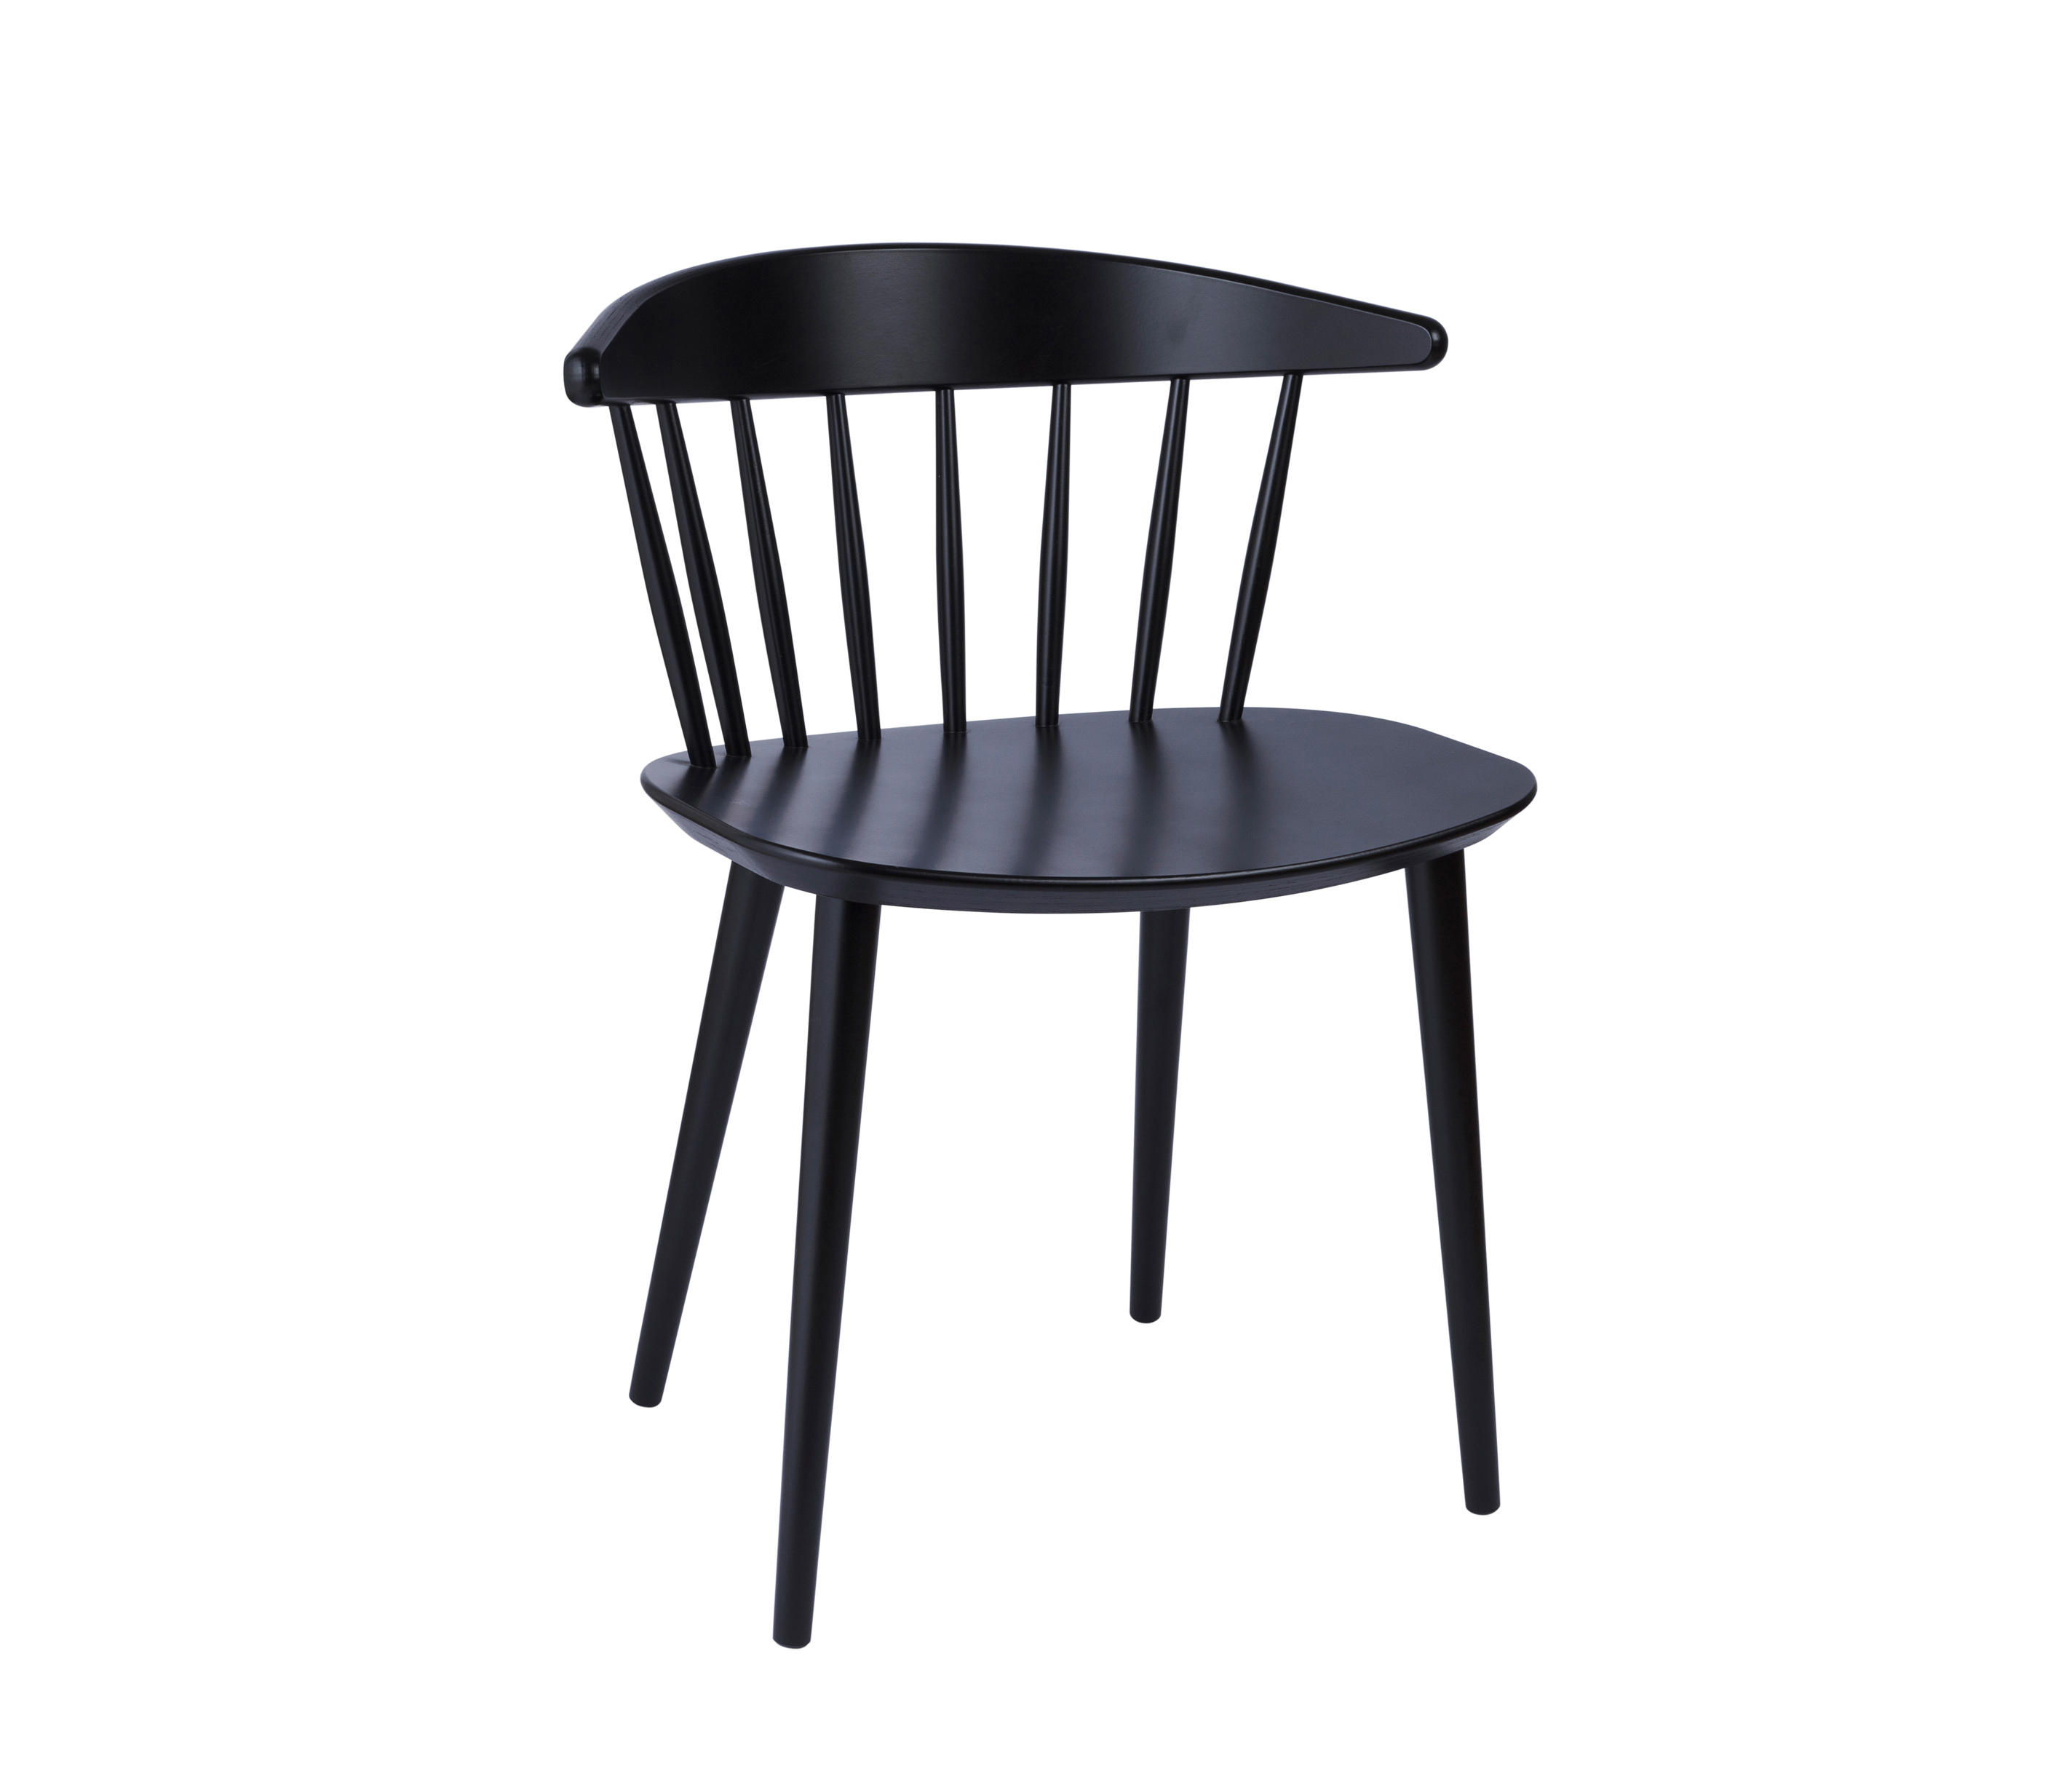 J104 CHAIR - Stühle von Hay | Architonic